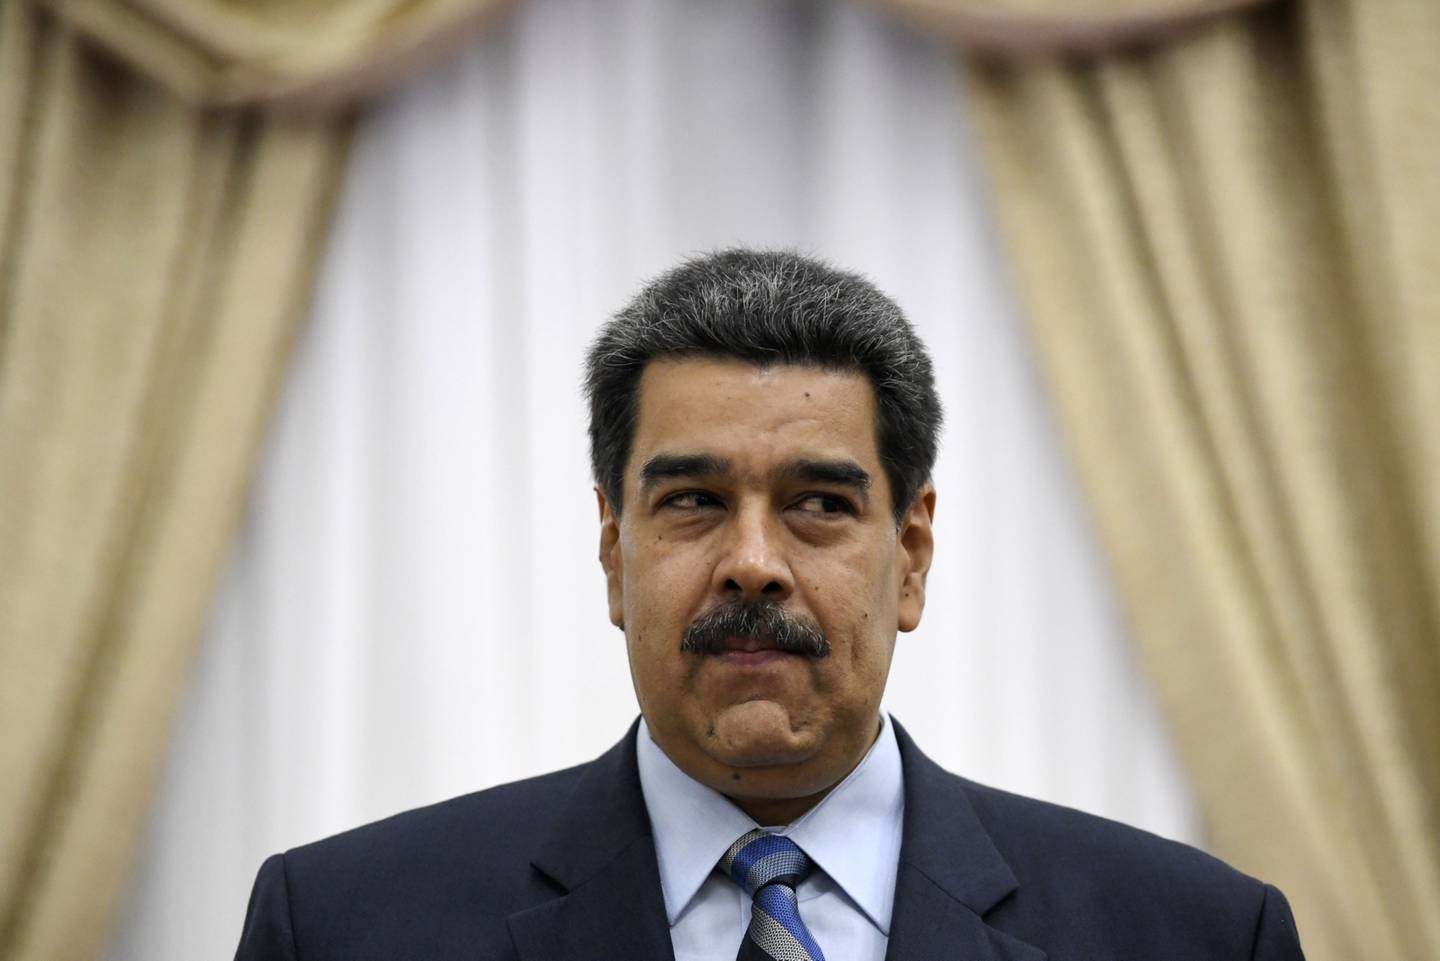 La técnica nazi que usa Maduro para torturar en Venezuela